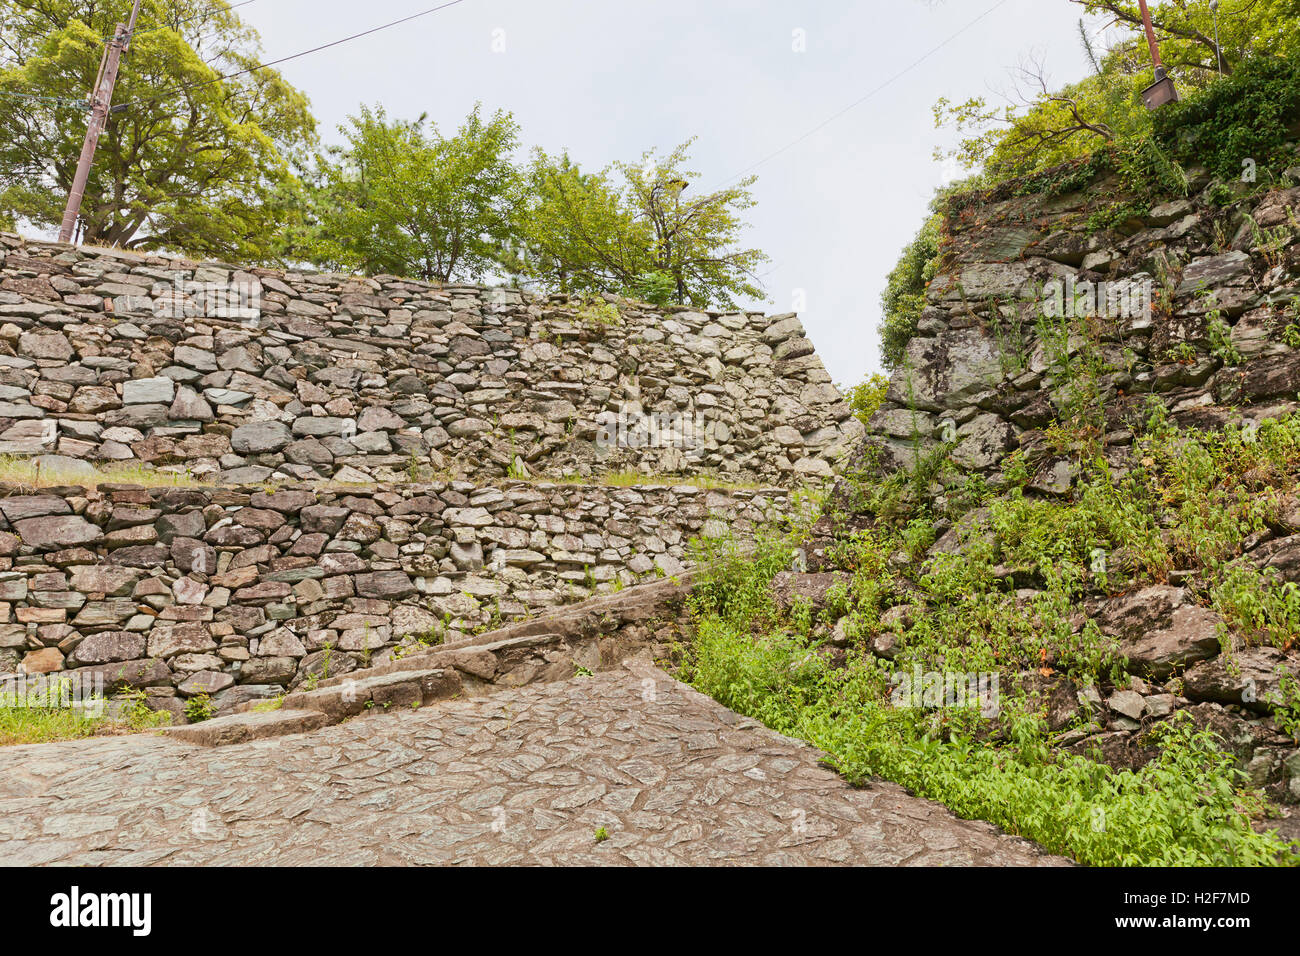 Stone walls (ishigaki) of Wakayama castle, Japan Stock Photo